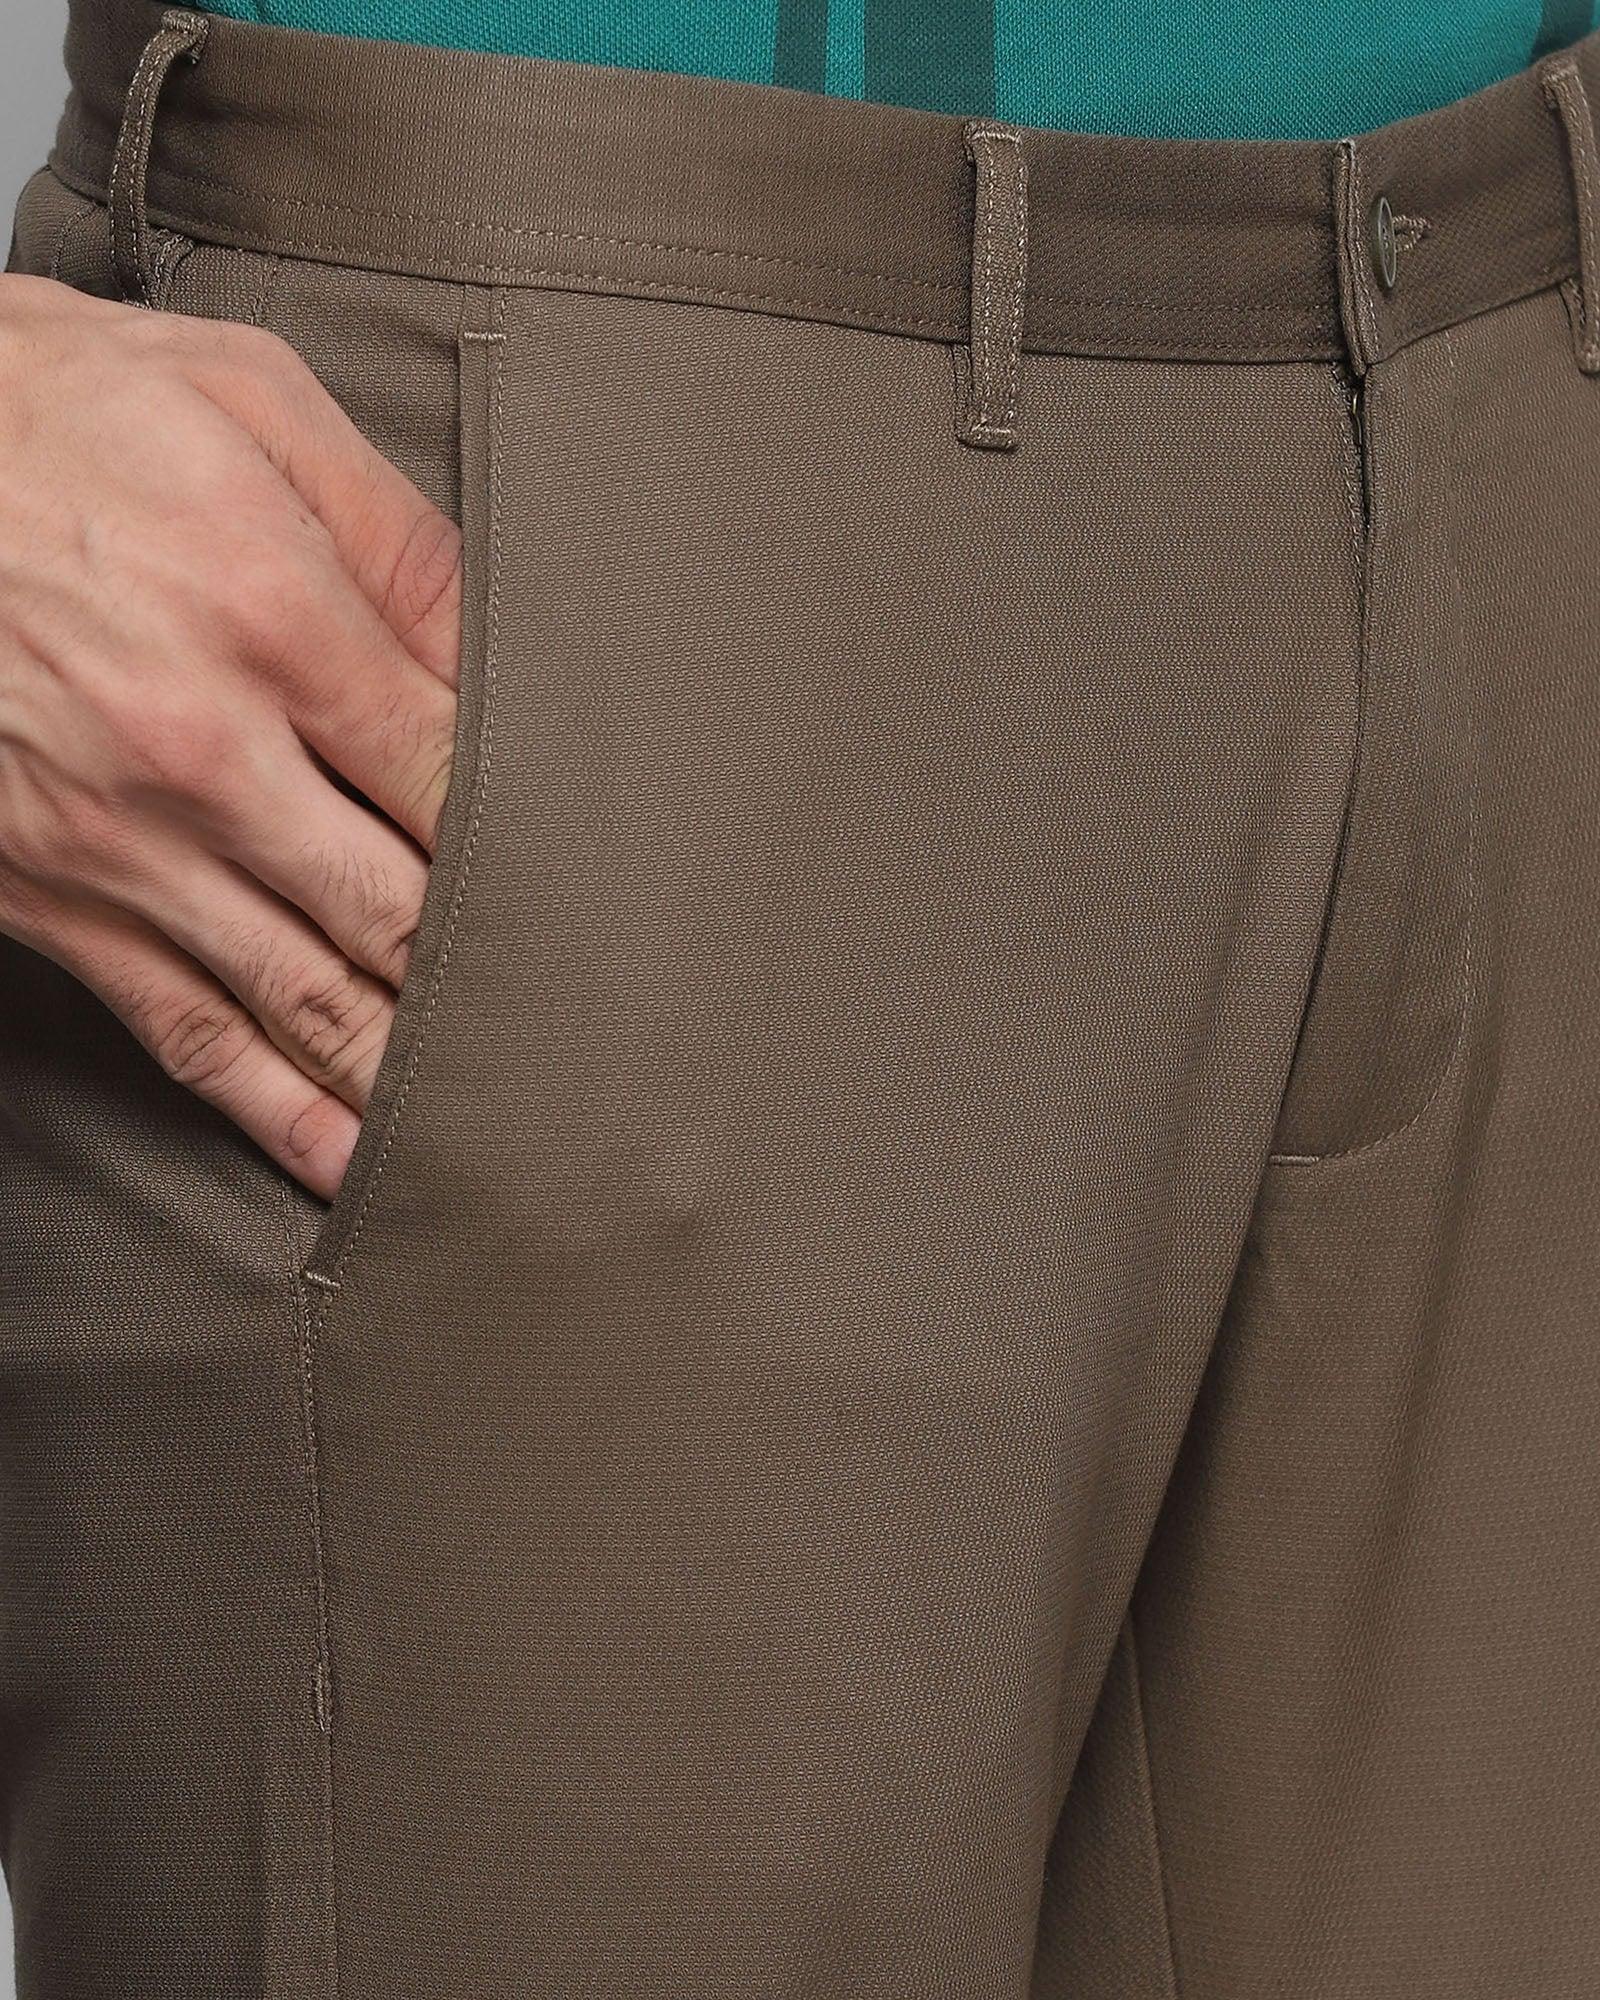 Slim Fit B-91 Casual Olive Textured Khakis - Dan